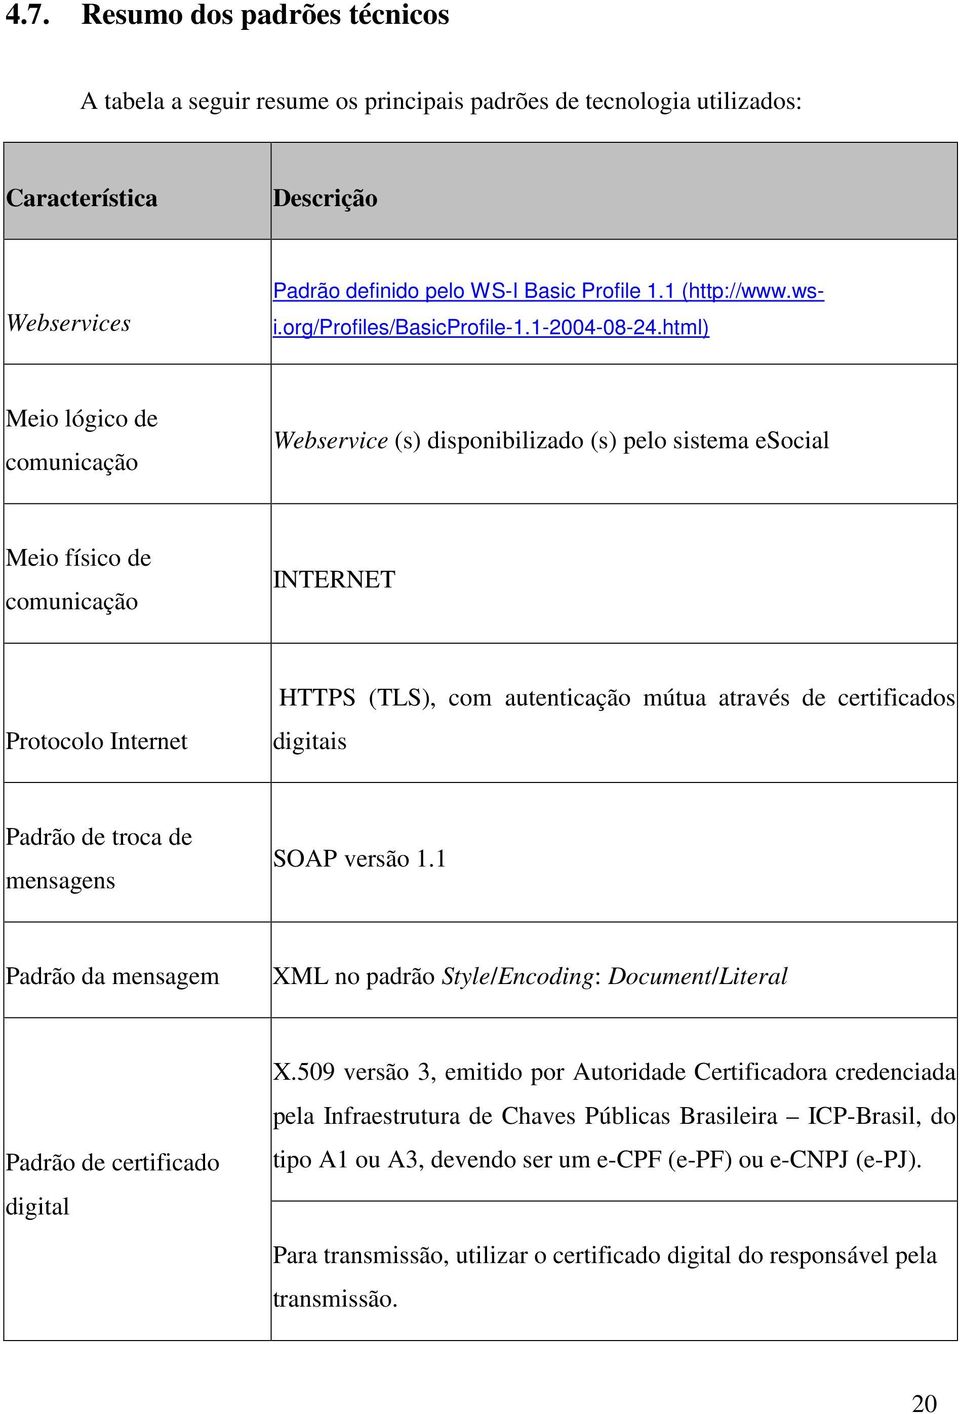 html) Meio lógico de comunicação Webservice (s) disponibilizado (s) pelo sistema esocial Meio físico de comunicação INTERNET Protocolo Internet HTTPS (TLS), com autenticação mútua através de